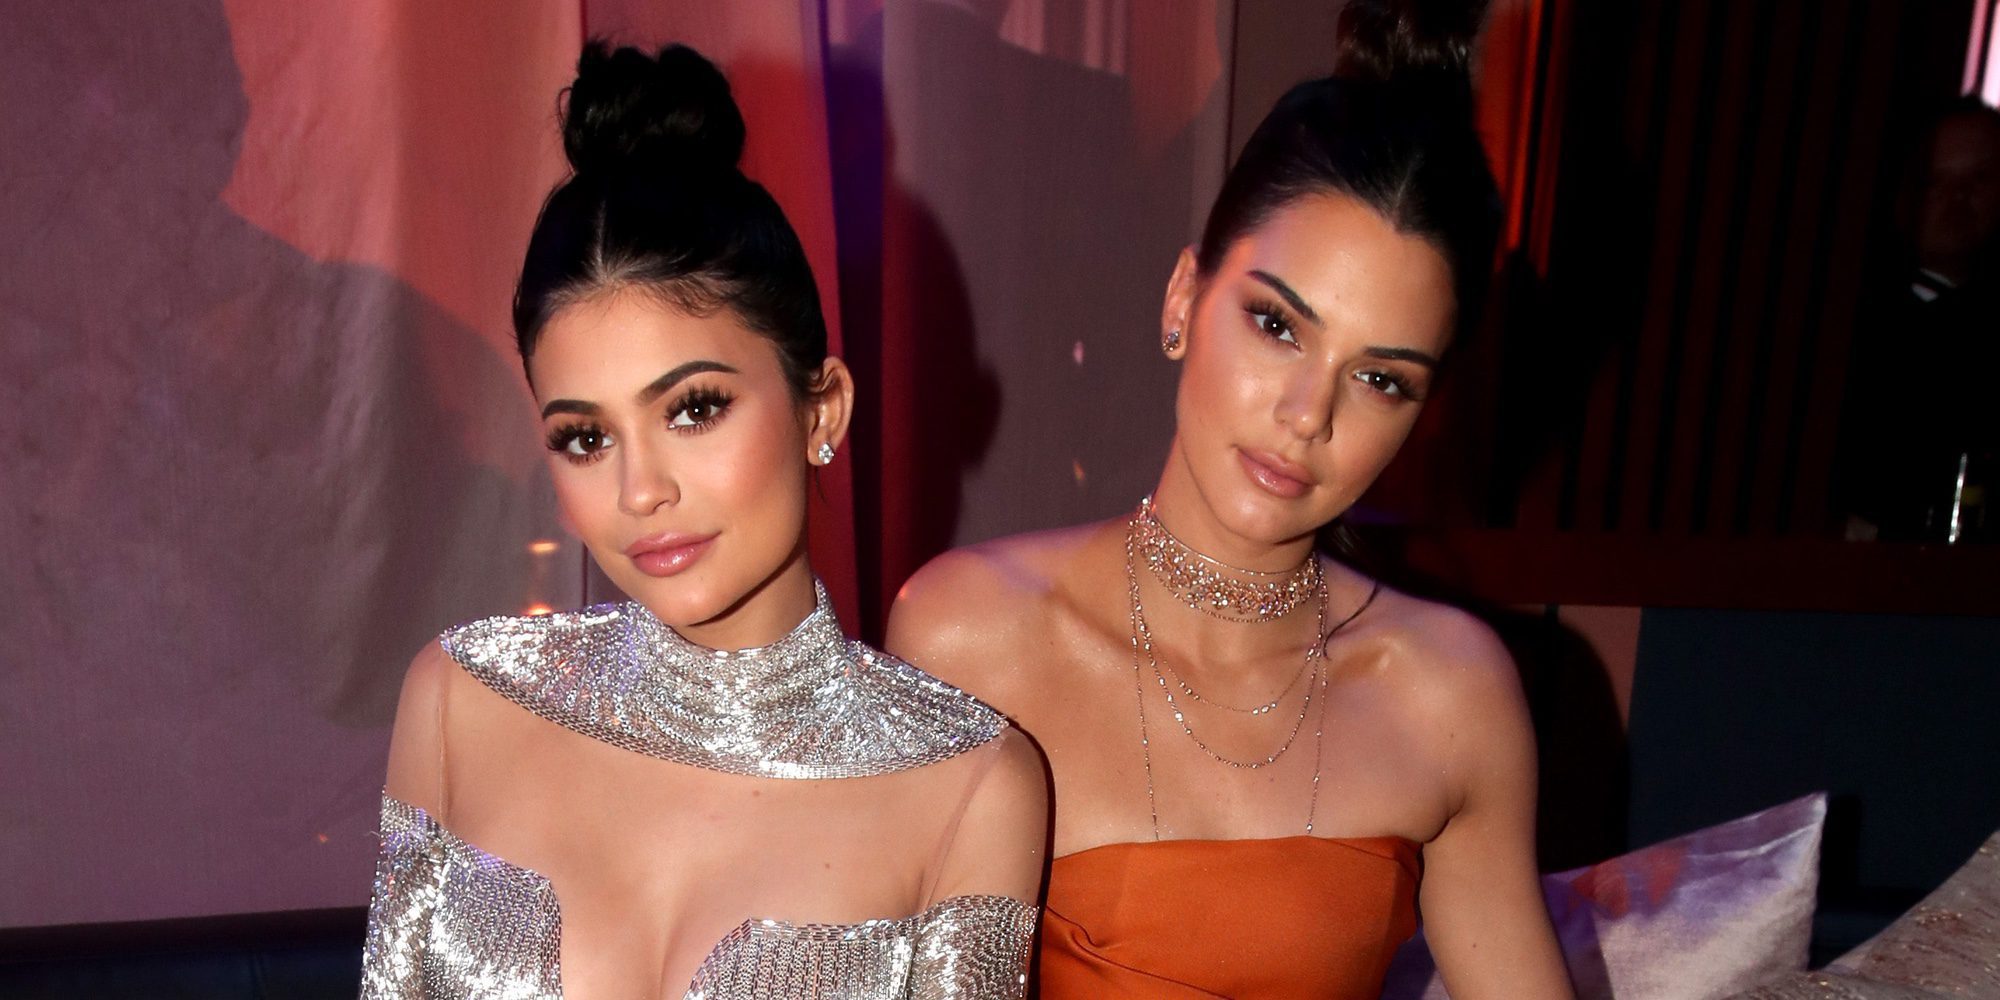 Los rumores sobre cirugía plástica pasan factura a las hermanas Kendall y Kylie Jenner